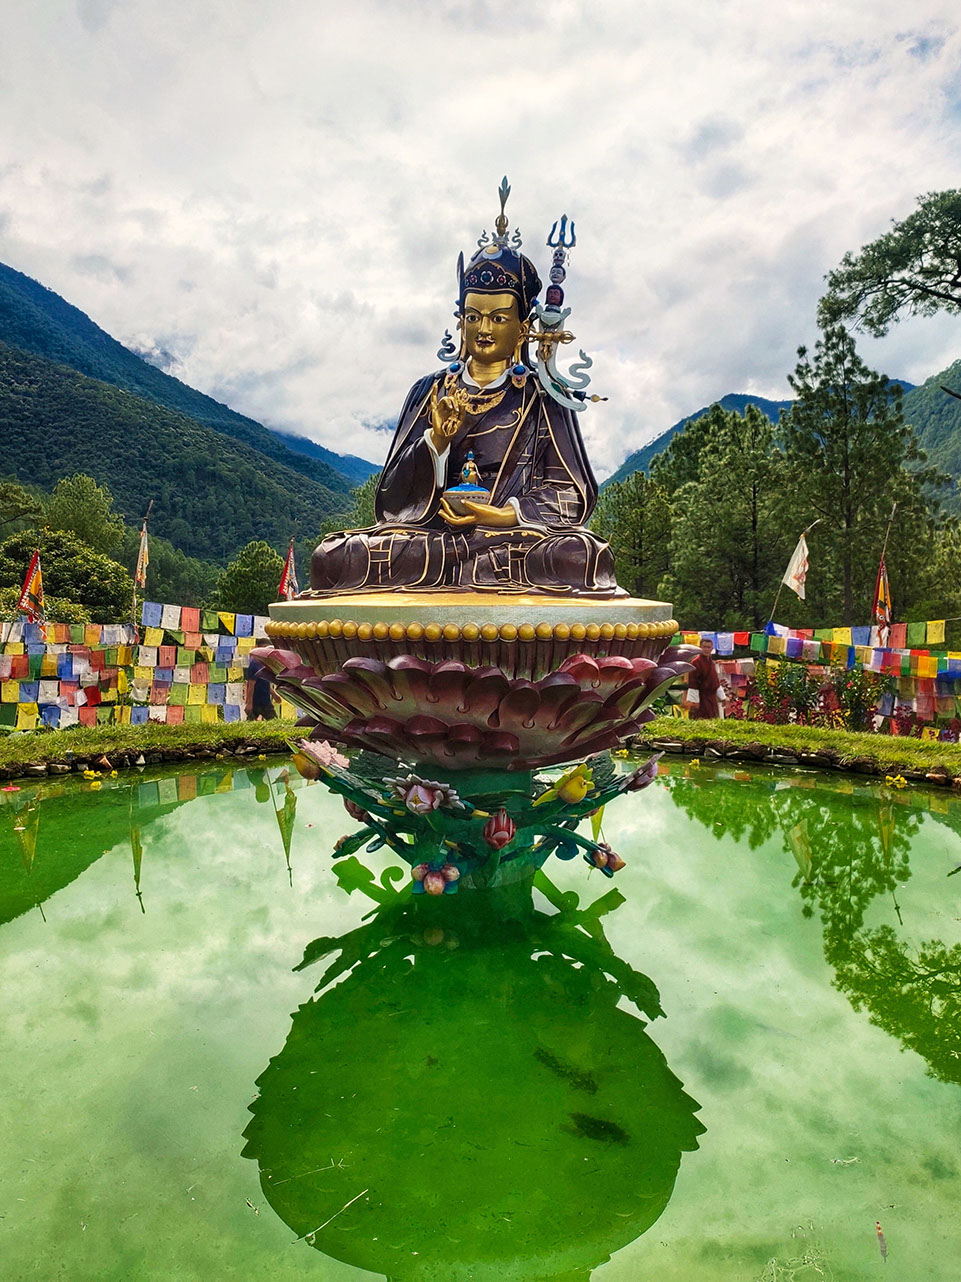 Mini statue of Guru Padmasambhava in Bhutan